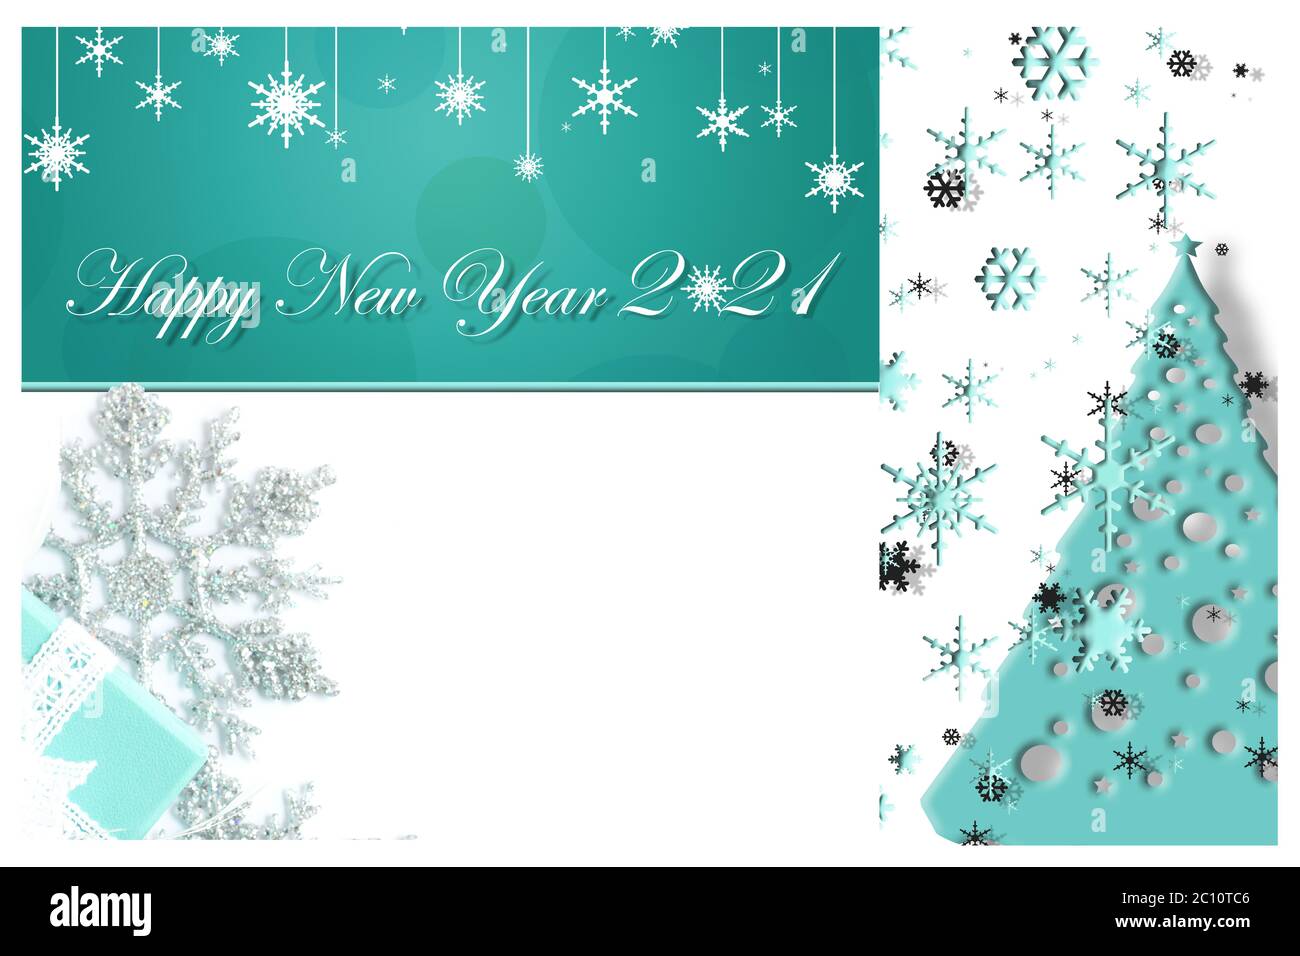 Collage de Noël et du nouvel an de couleur bleu turquoise. Flocons de neige, sapin de Noël, boîte cadeau sur fond blanc avec texte bonne année 2021. Concept de Noël. Illustration, espace de copie, bannière Banque D'Images